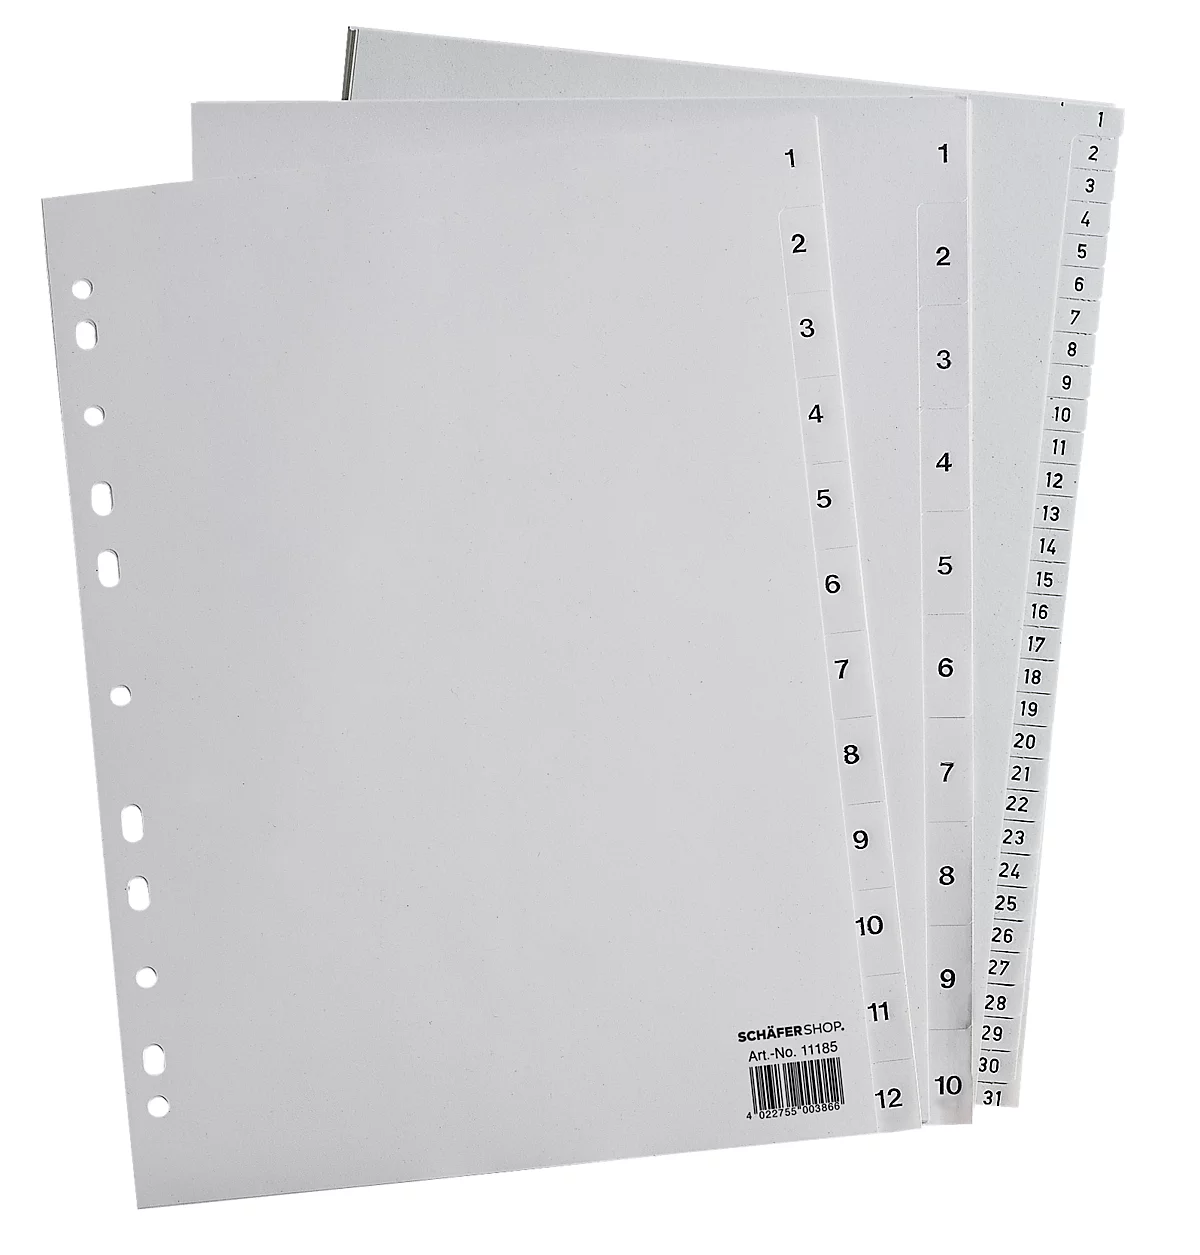 Intercalaires PP pour classeurs à levier SCHÄFER SHOP, format plein A4, numérotés de 1 à 10, gris